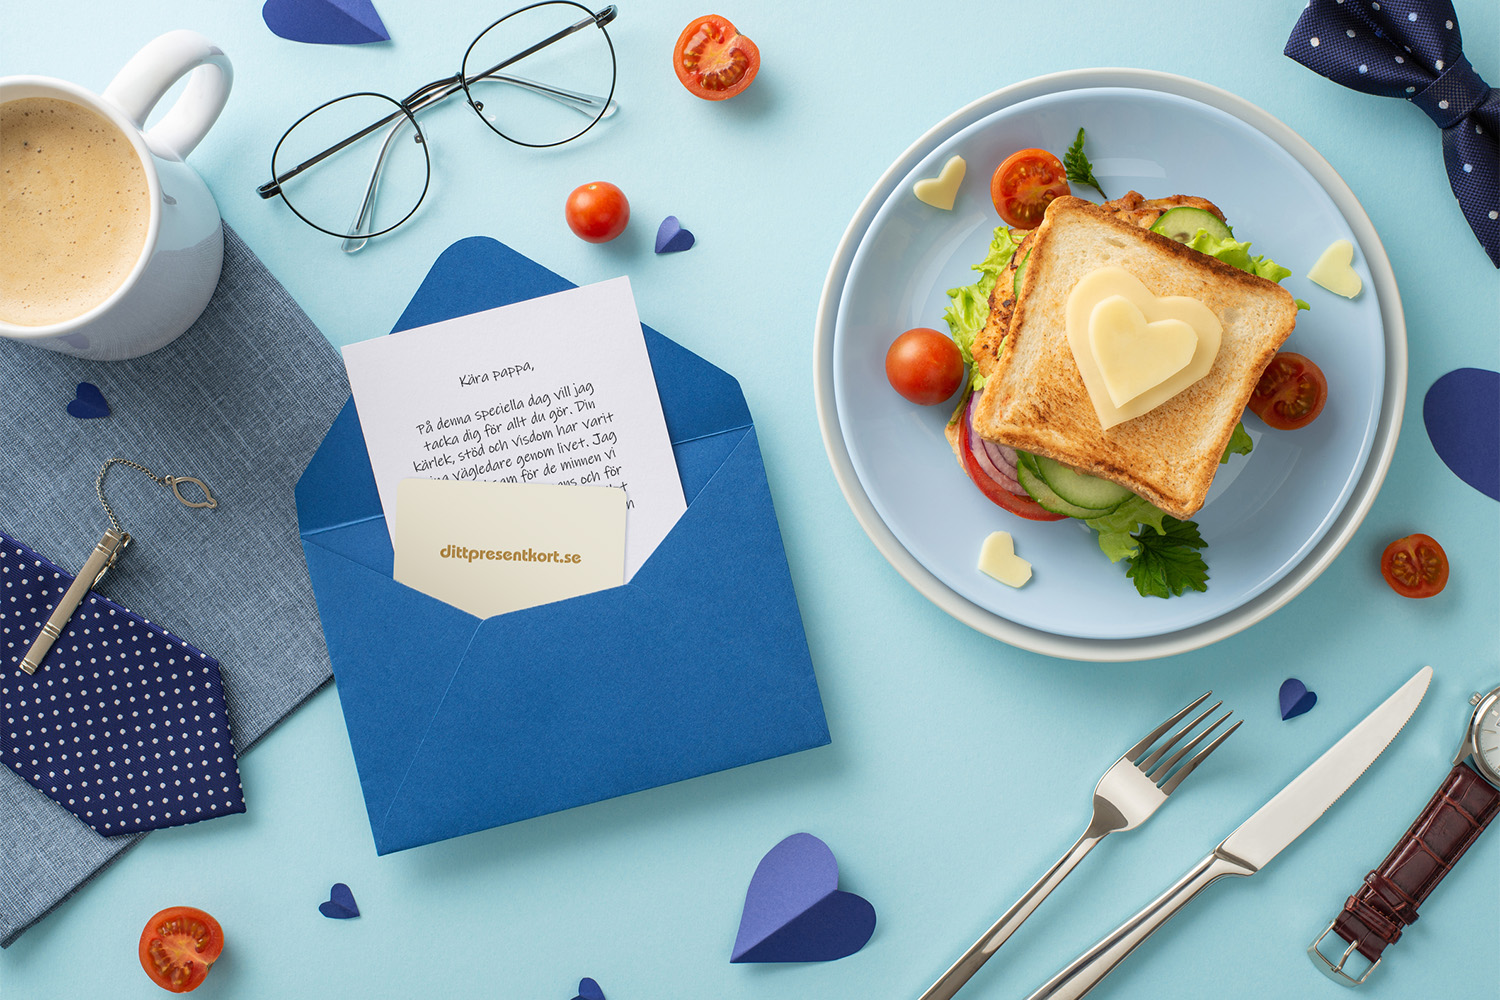 Blått kuvert med brev och ditt presentkort, samt en smörgås med tomater och ost format som ett hjärta, och glas, slips, kaffekopp och rosett på blå botten.